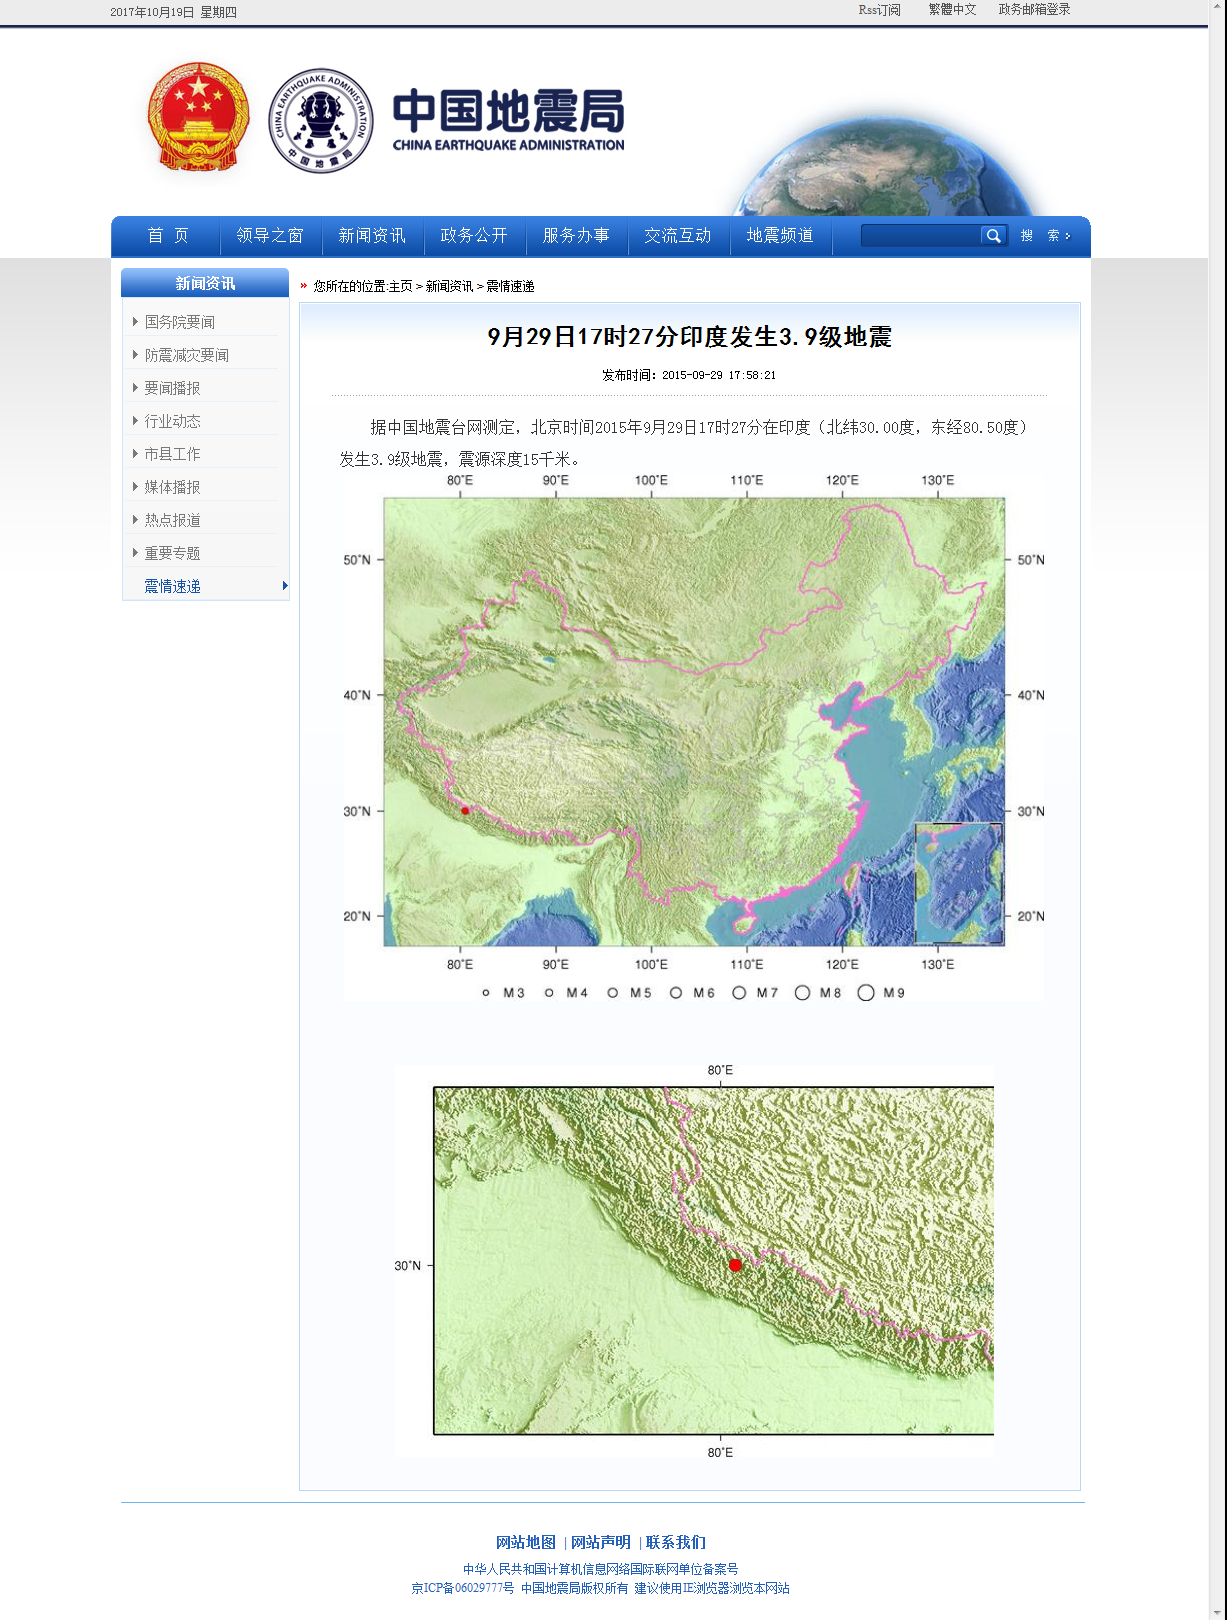 9月29日17时27分印度发生3.9级地震.png